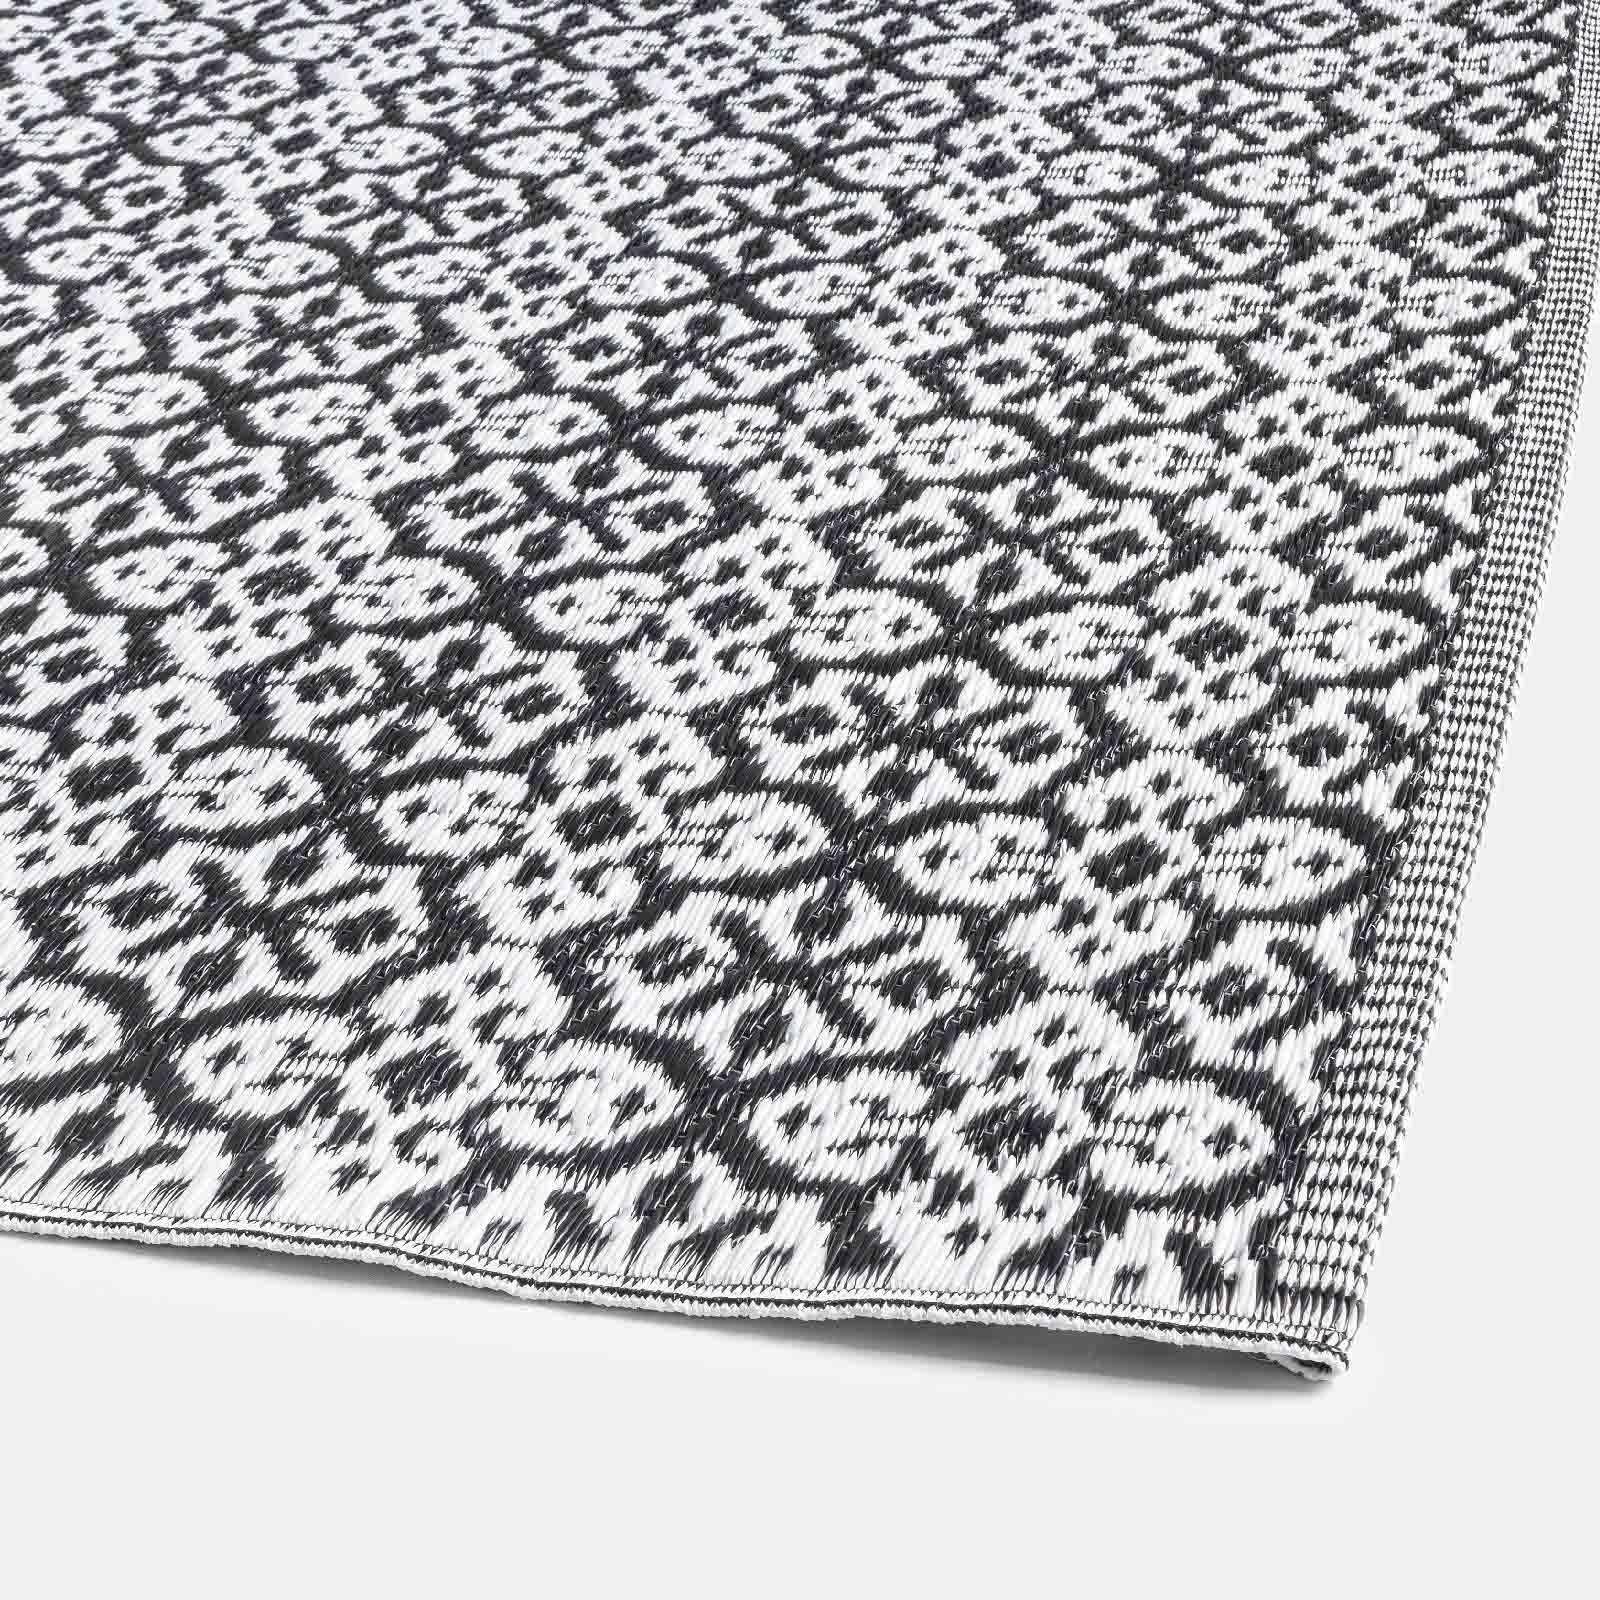 Tappeto in polipropilene 120x180 cm nero e bianco con motivi ornamentali